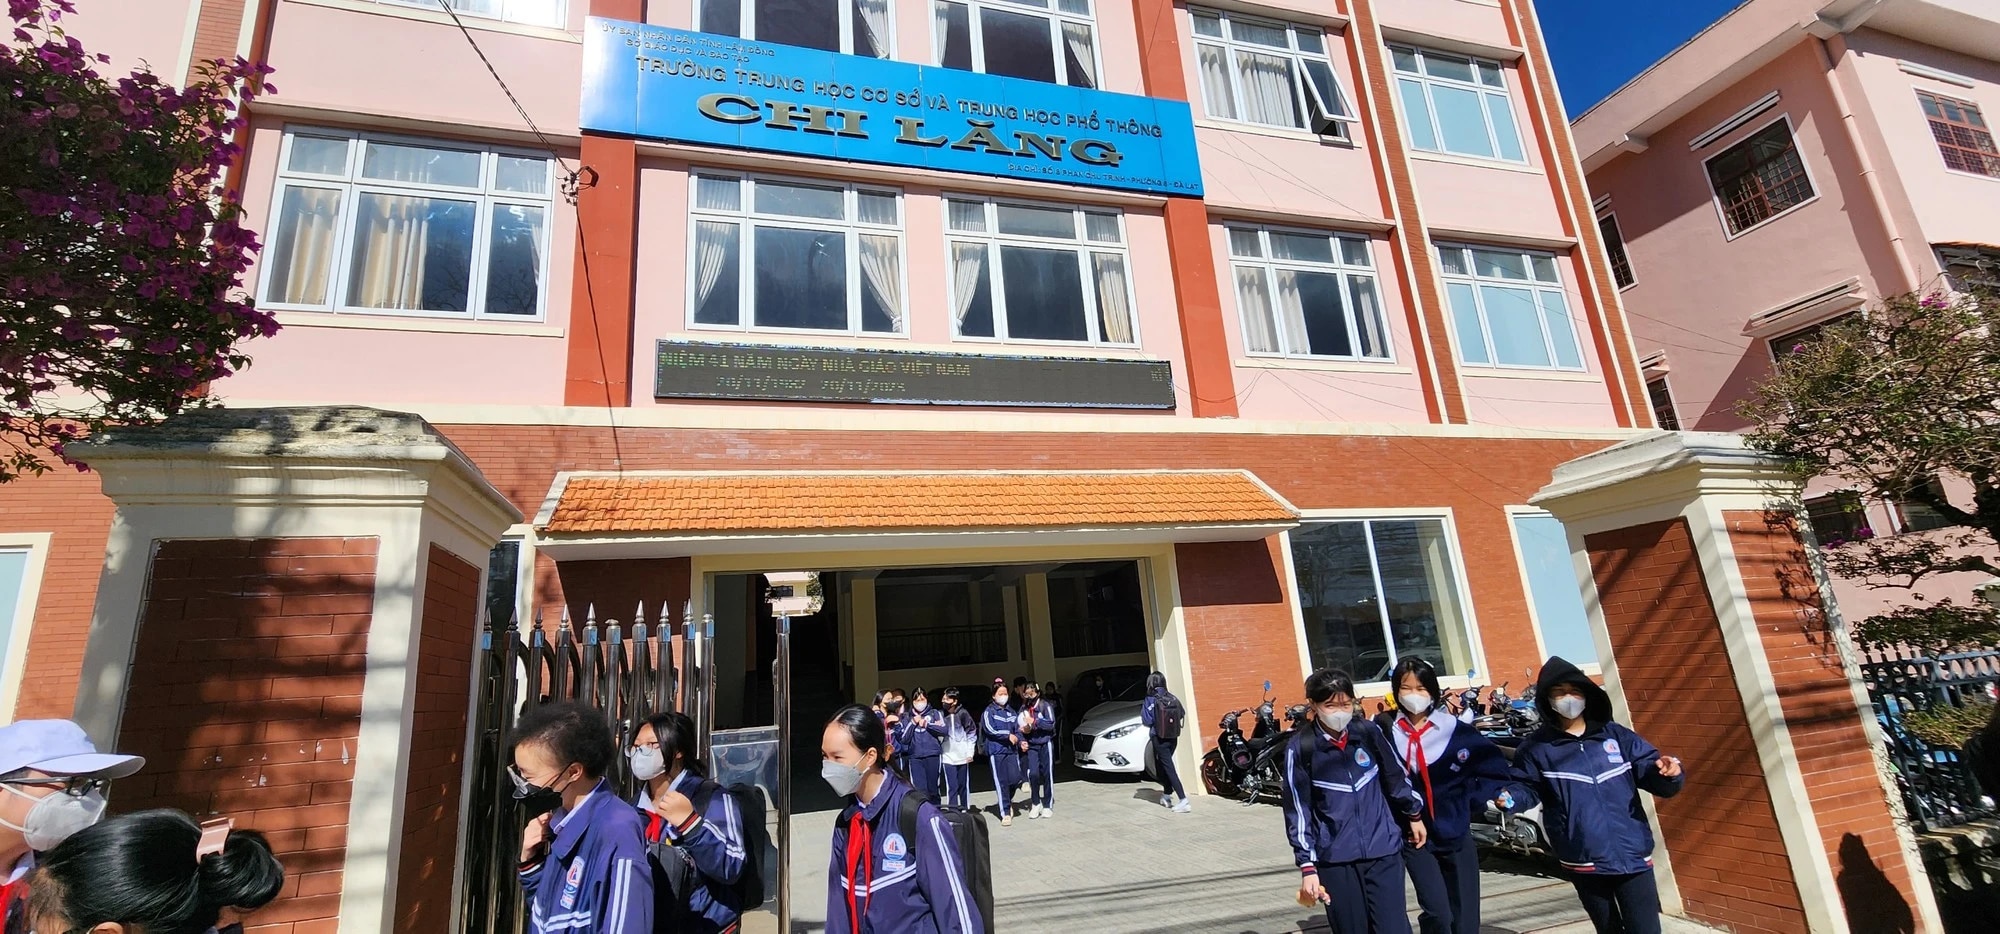 Lâm Đồng:Khẩn trương kiểm tra các công trình có nguy cơ mất an toàn trong trường học - Ảnh 1.